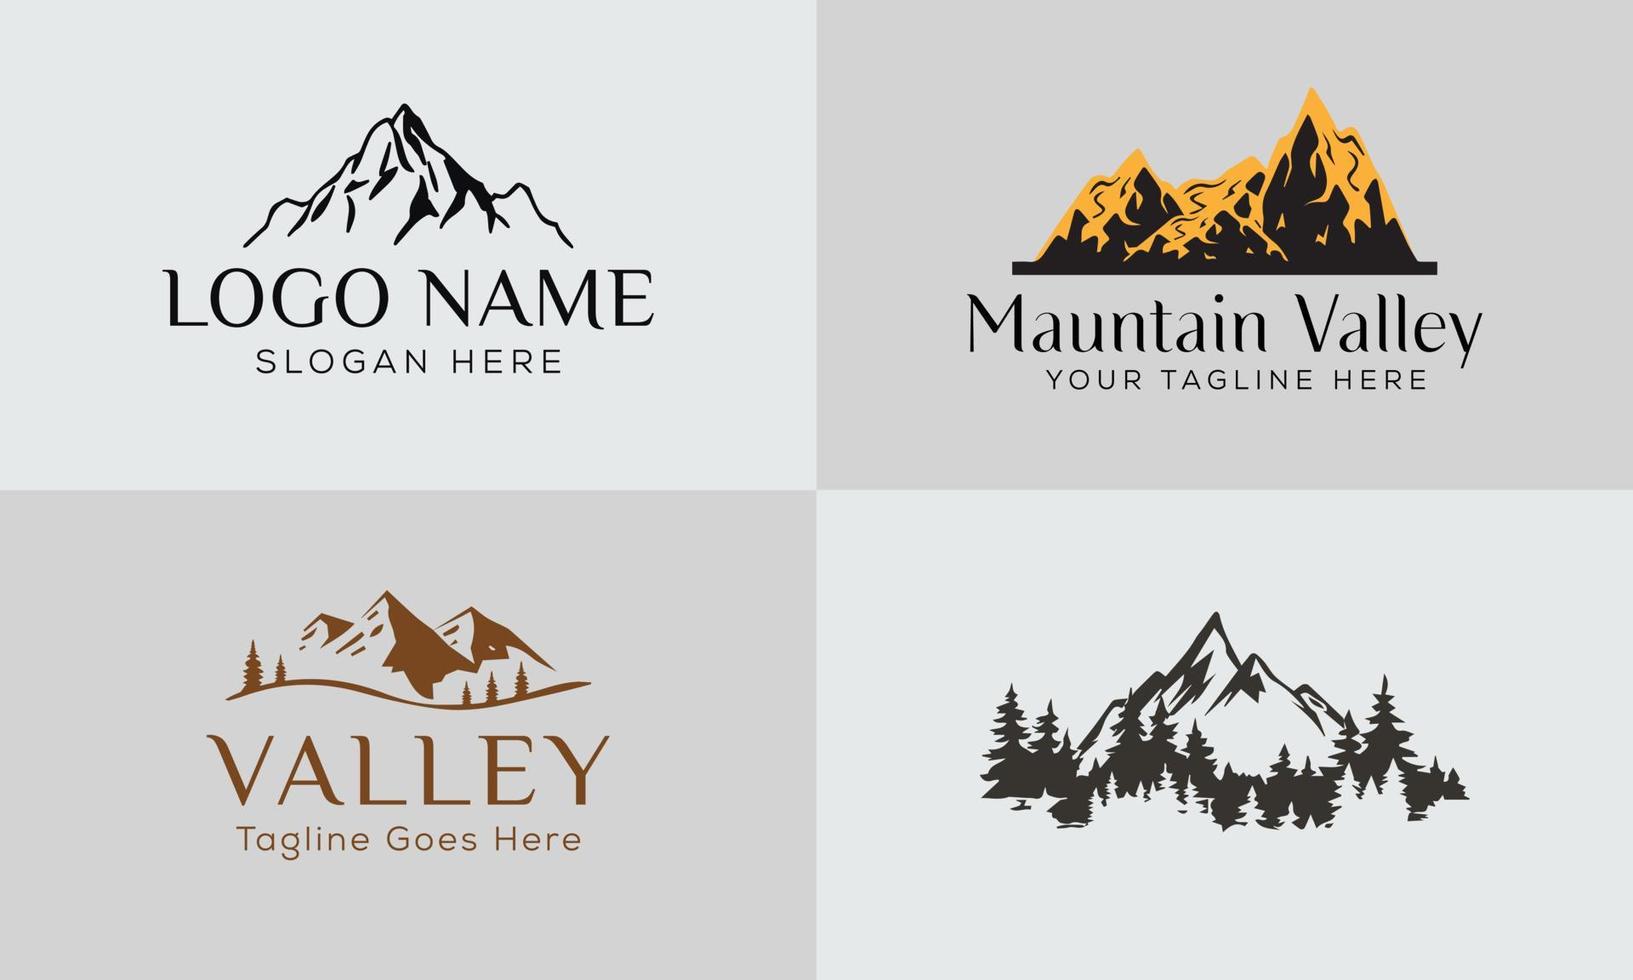 set di disegni di logo vettoriali di montagna e avventure all'aria aperta, stile vintage